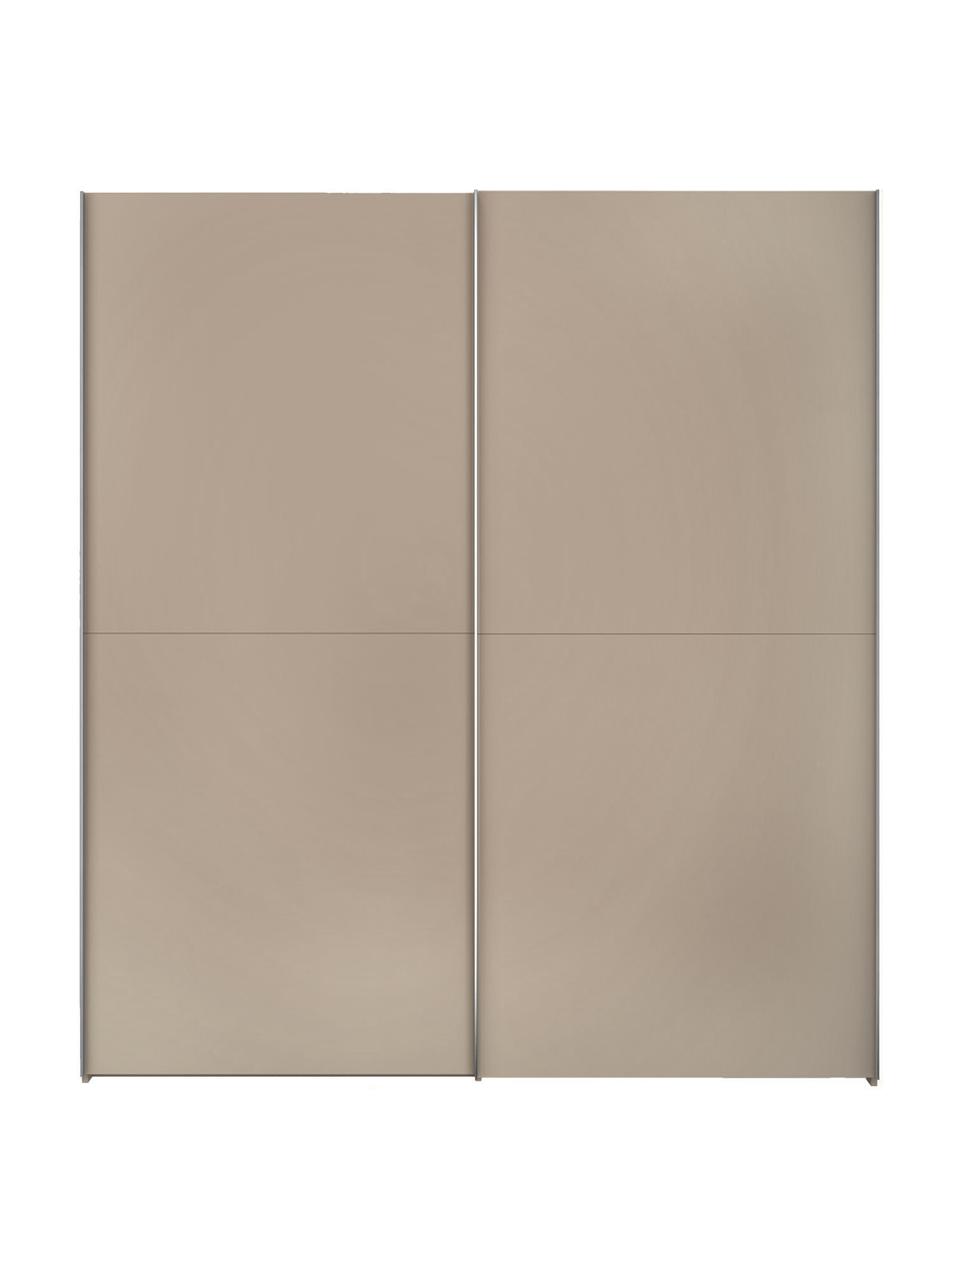 Schwebetürenschrank Oliver mit 2 Türen, inkl. Montageservice, Korpus: Holzwerkstoffplatten, lac, Beige, 202 x 225 cm